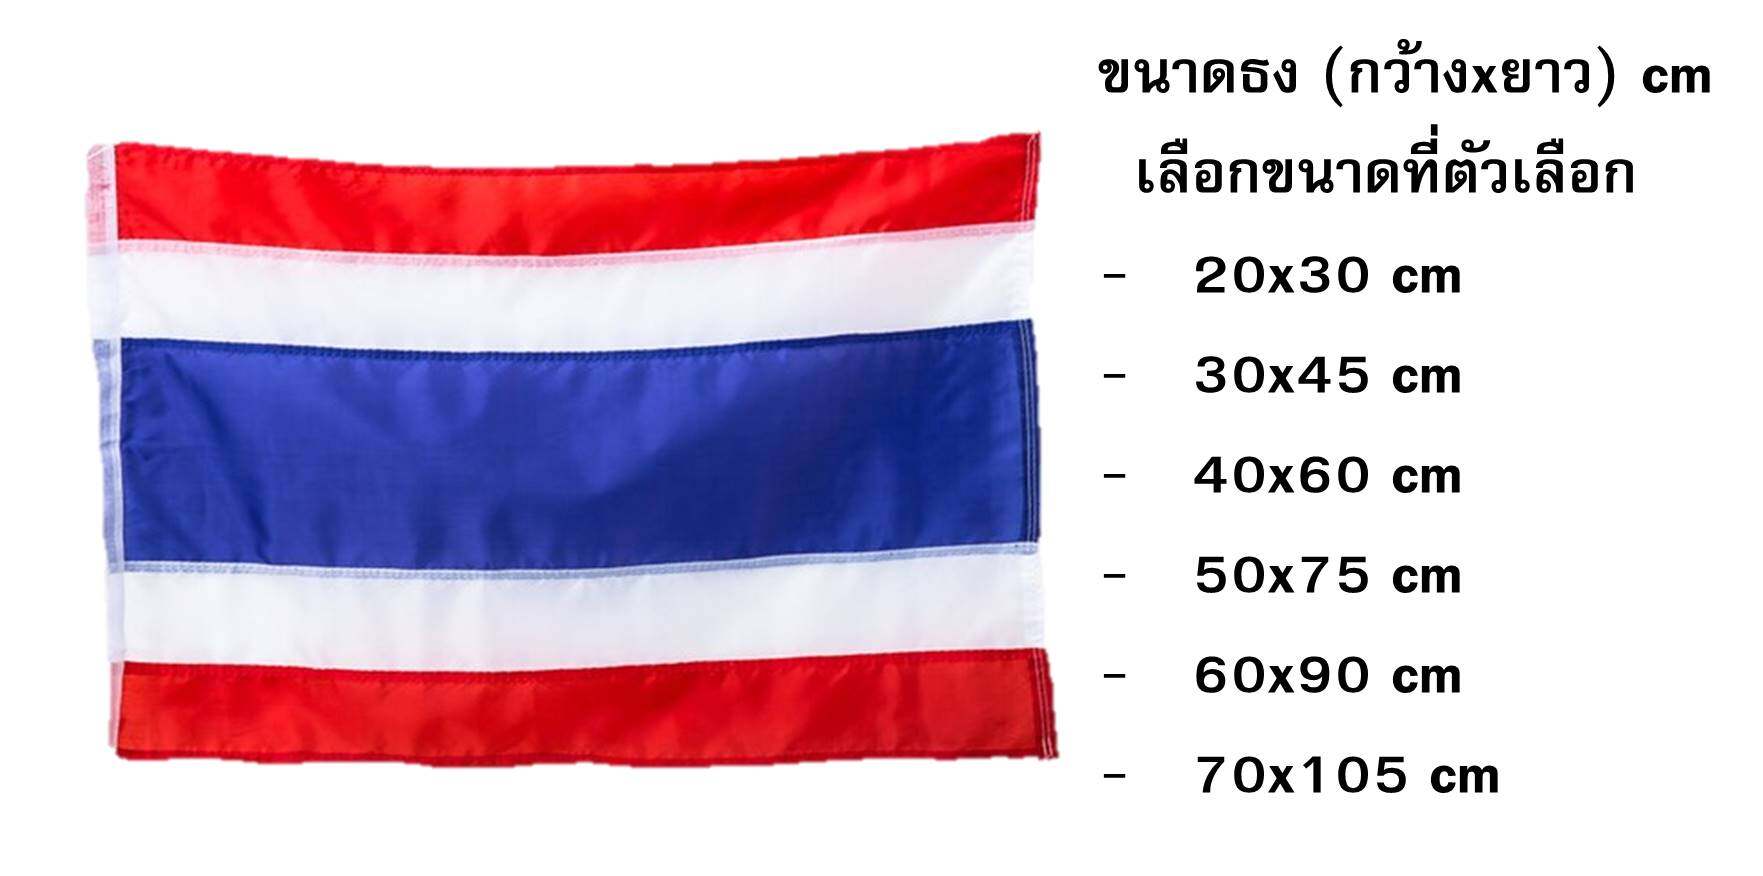 ธงชาติ ธงชาติไทย ธง มีให้เลือกหลายขนาด